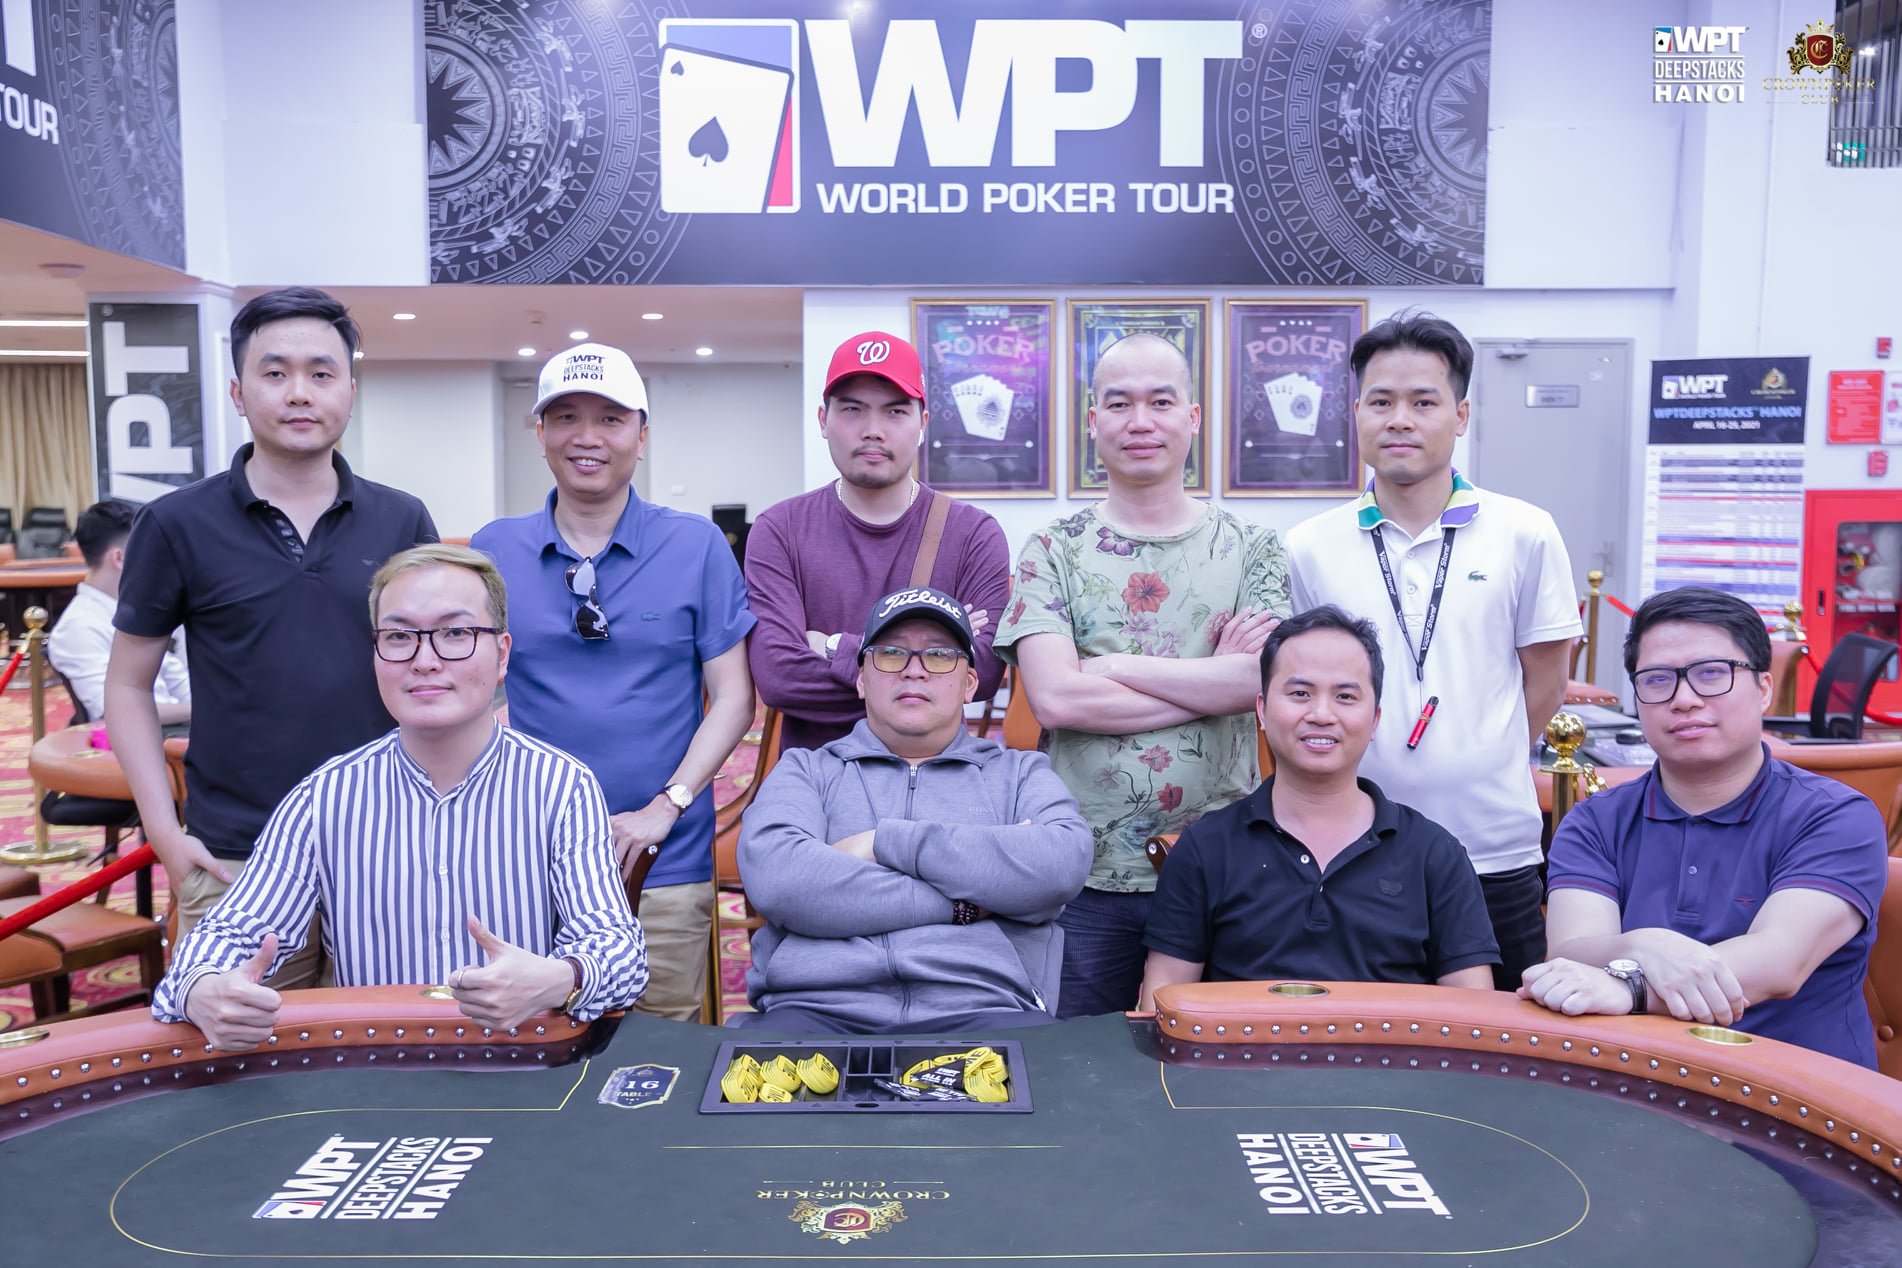 WPTDeepStacks Hanoi: Main Event final 9 players; HR draws 61 entries, pot nears VNđ 2BN, reg still open; final day Megastack Finale VNđ 300M gtd